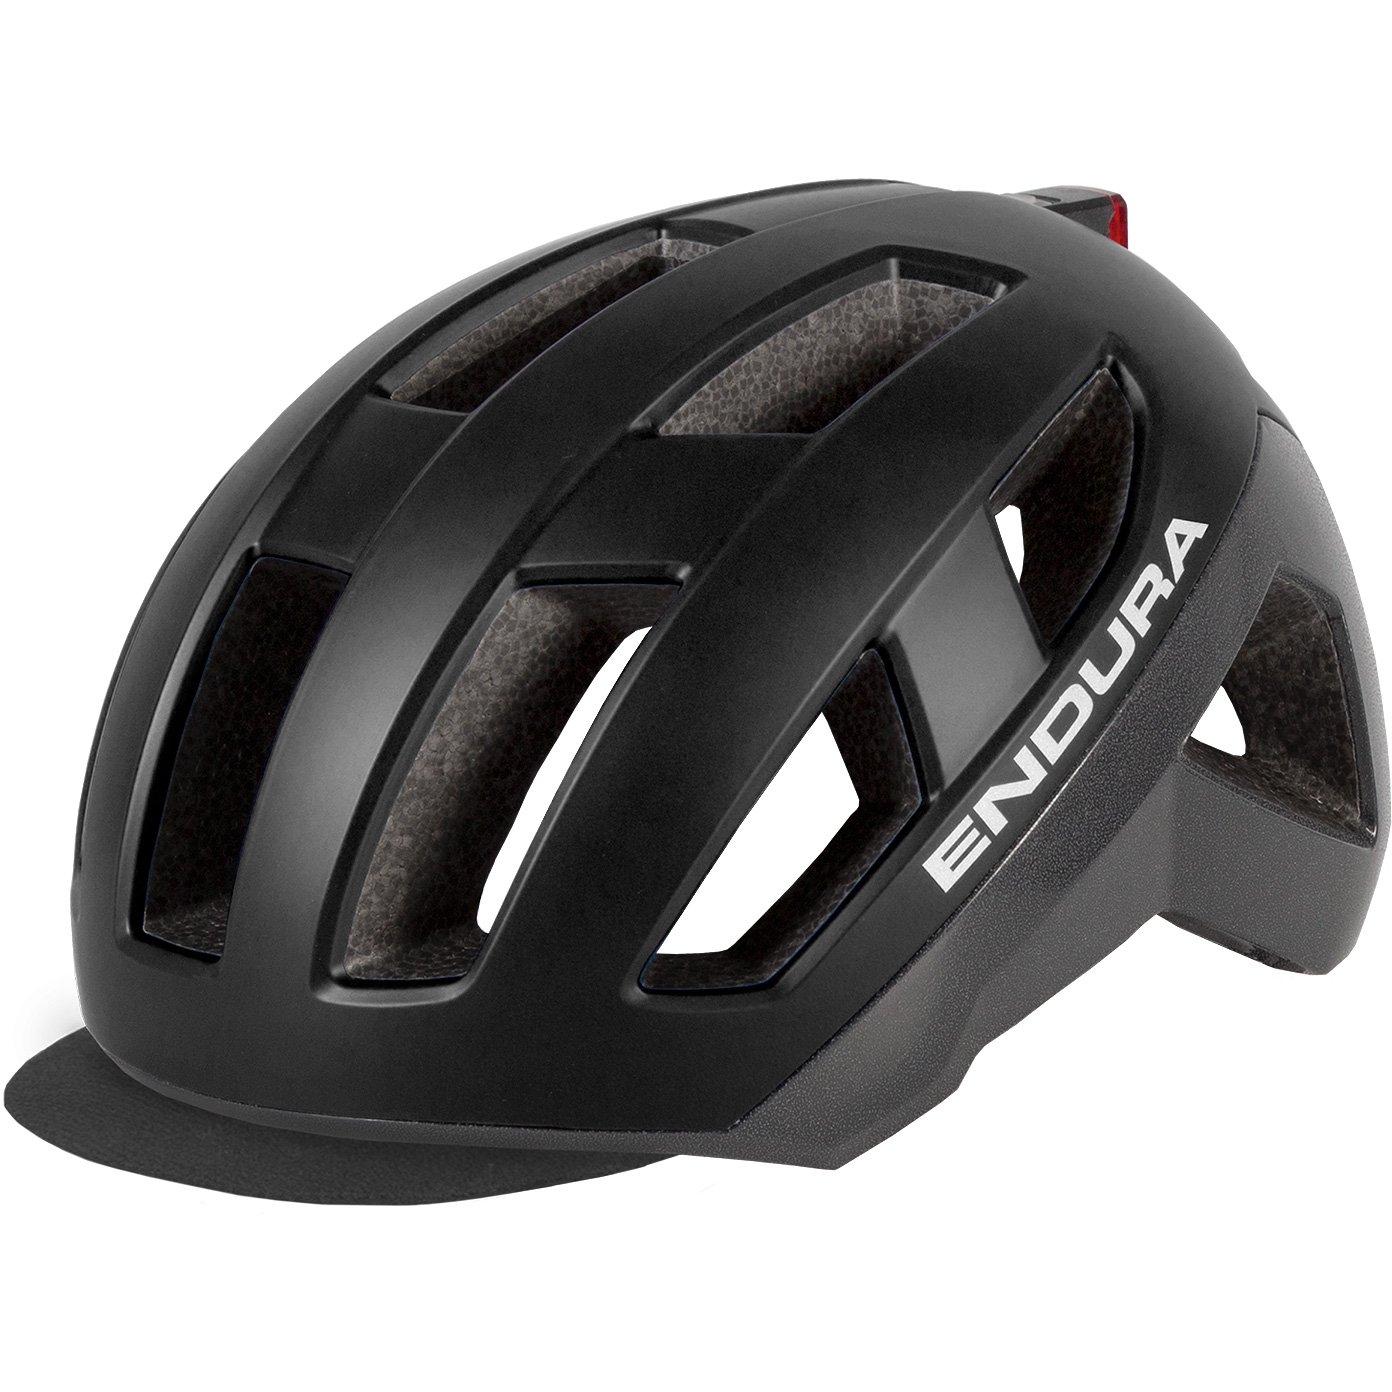 Produktbild von Endura Urban Luminite MIPS® Helm - schwarz